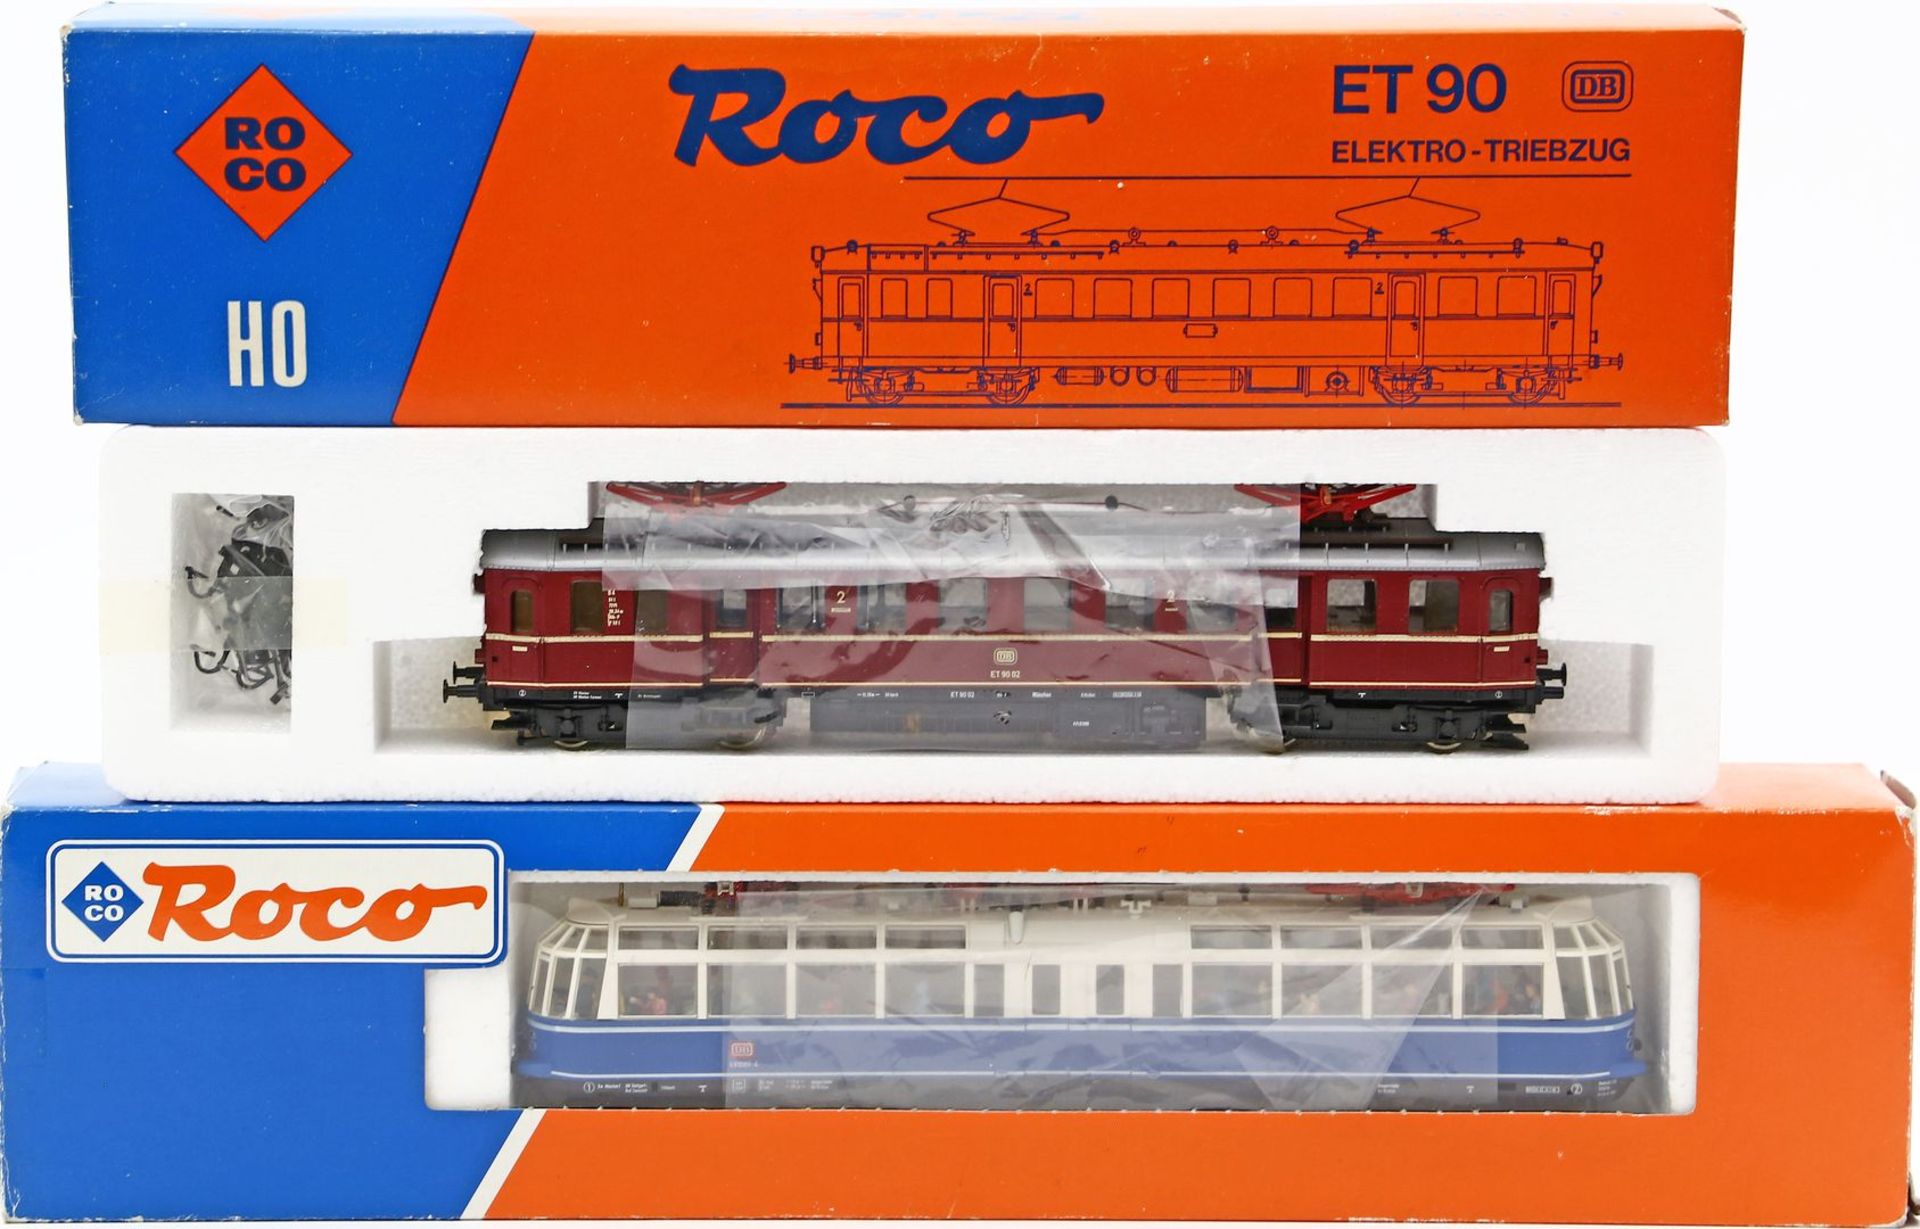 Aussichtstriebwagen und Elektro-Triebwagen, ROCO H0. 